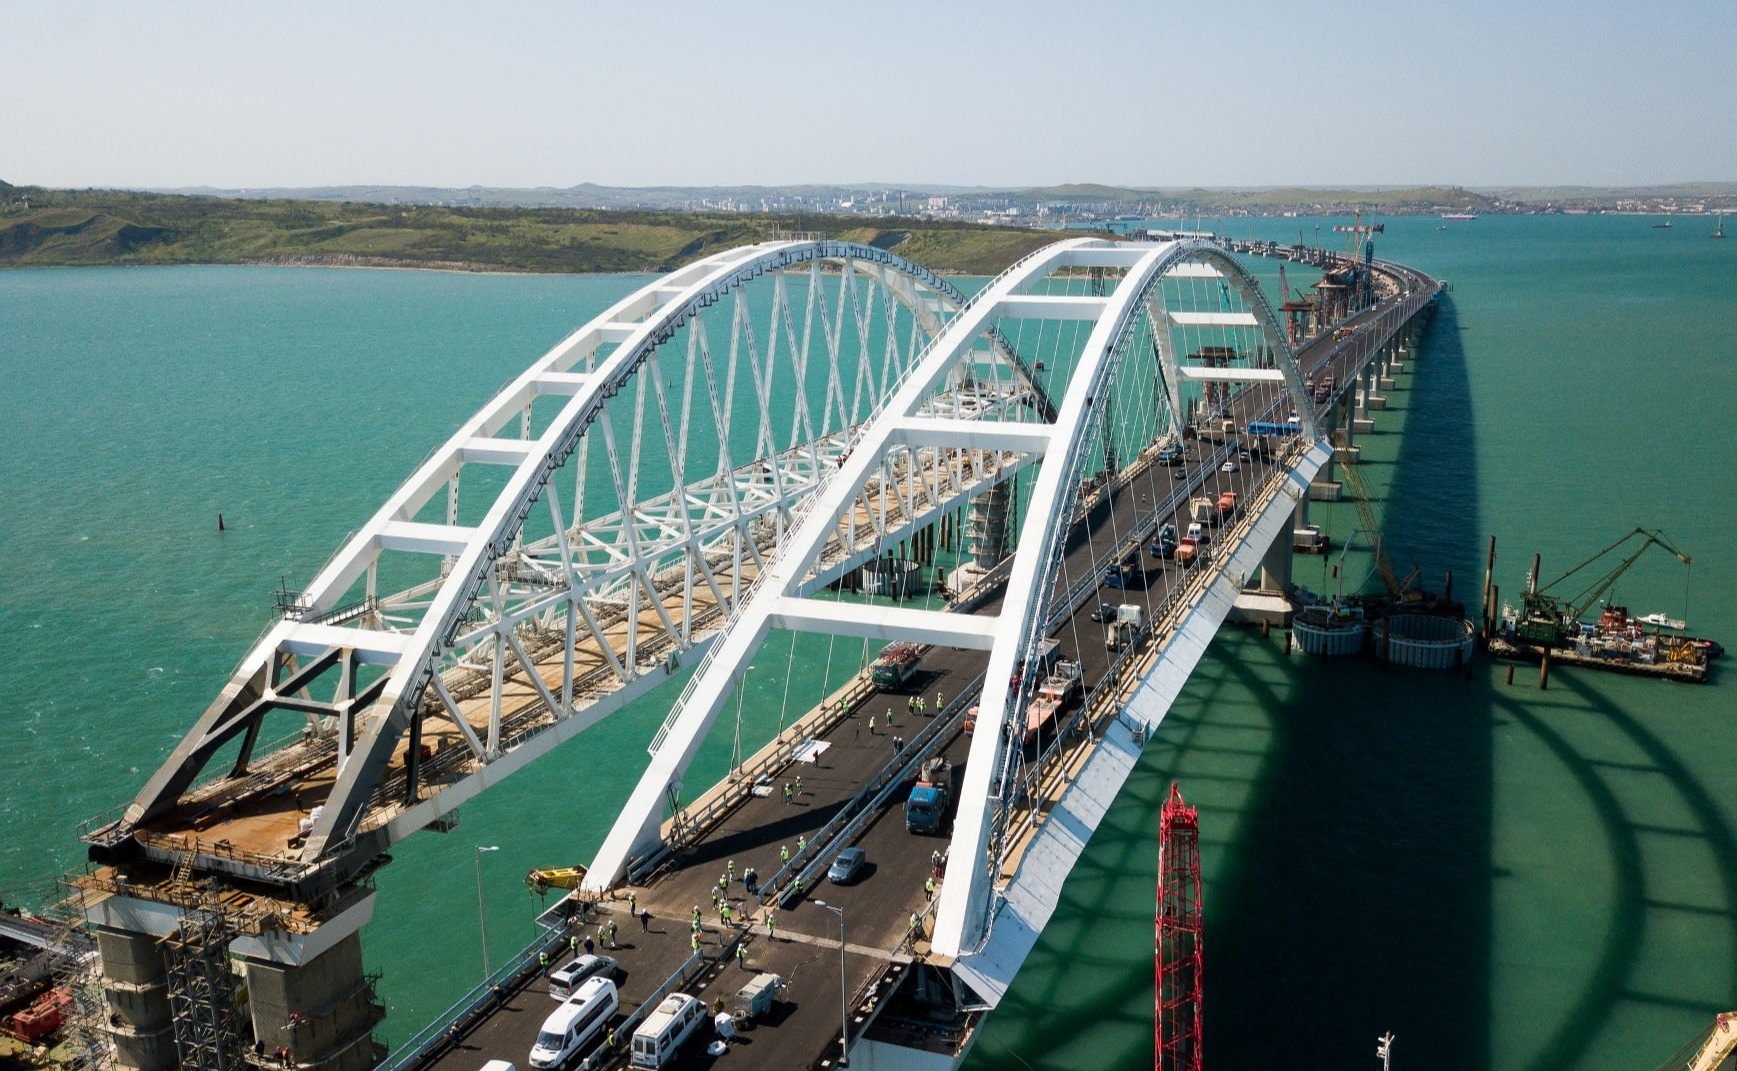 Глава региона Аксенов сообщил о временном закрытии Крымского моста из-за учений